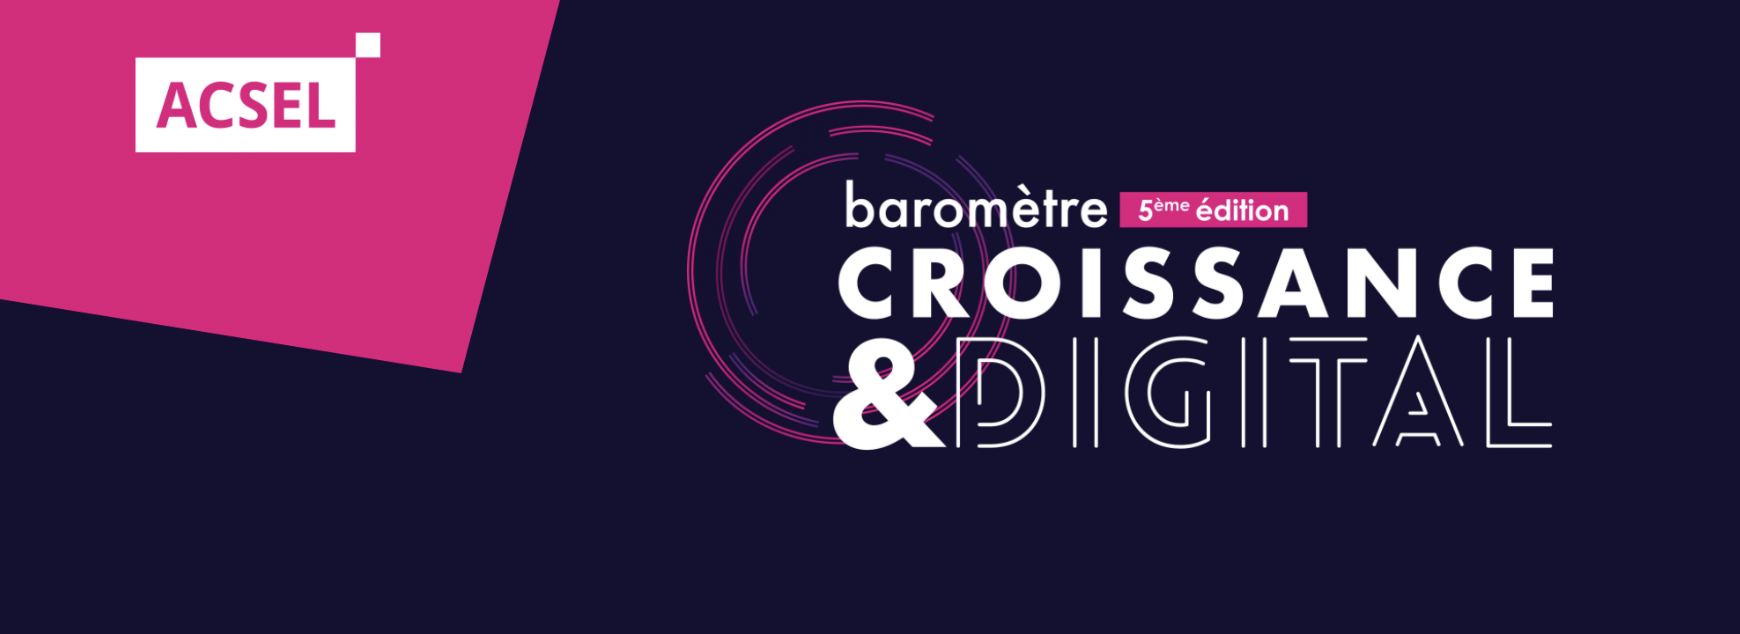 5e édition du baromètre Croissance & Digital de l’ACSEL – Bouclier du business lors de la crise, le digital devient un levier de croissance incontournable pour le commerce